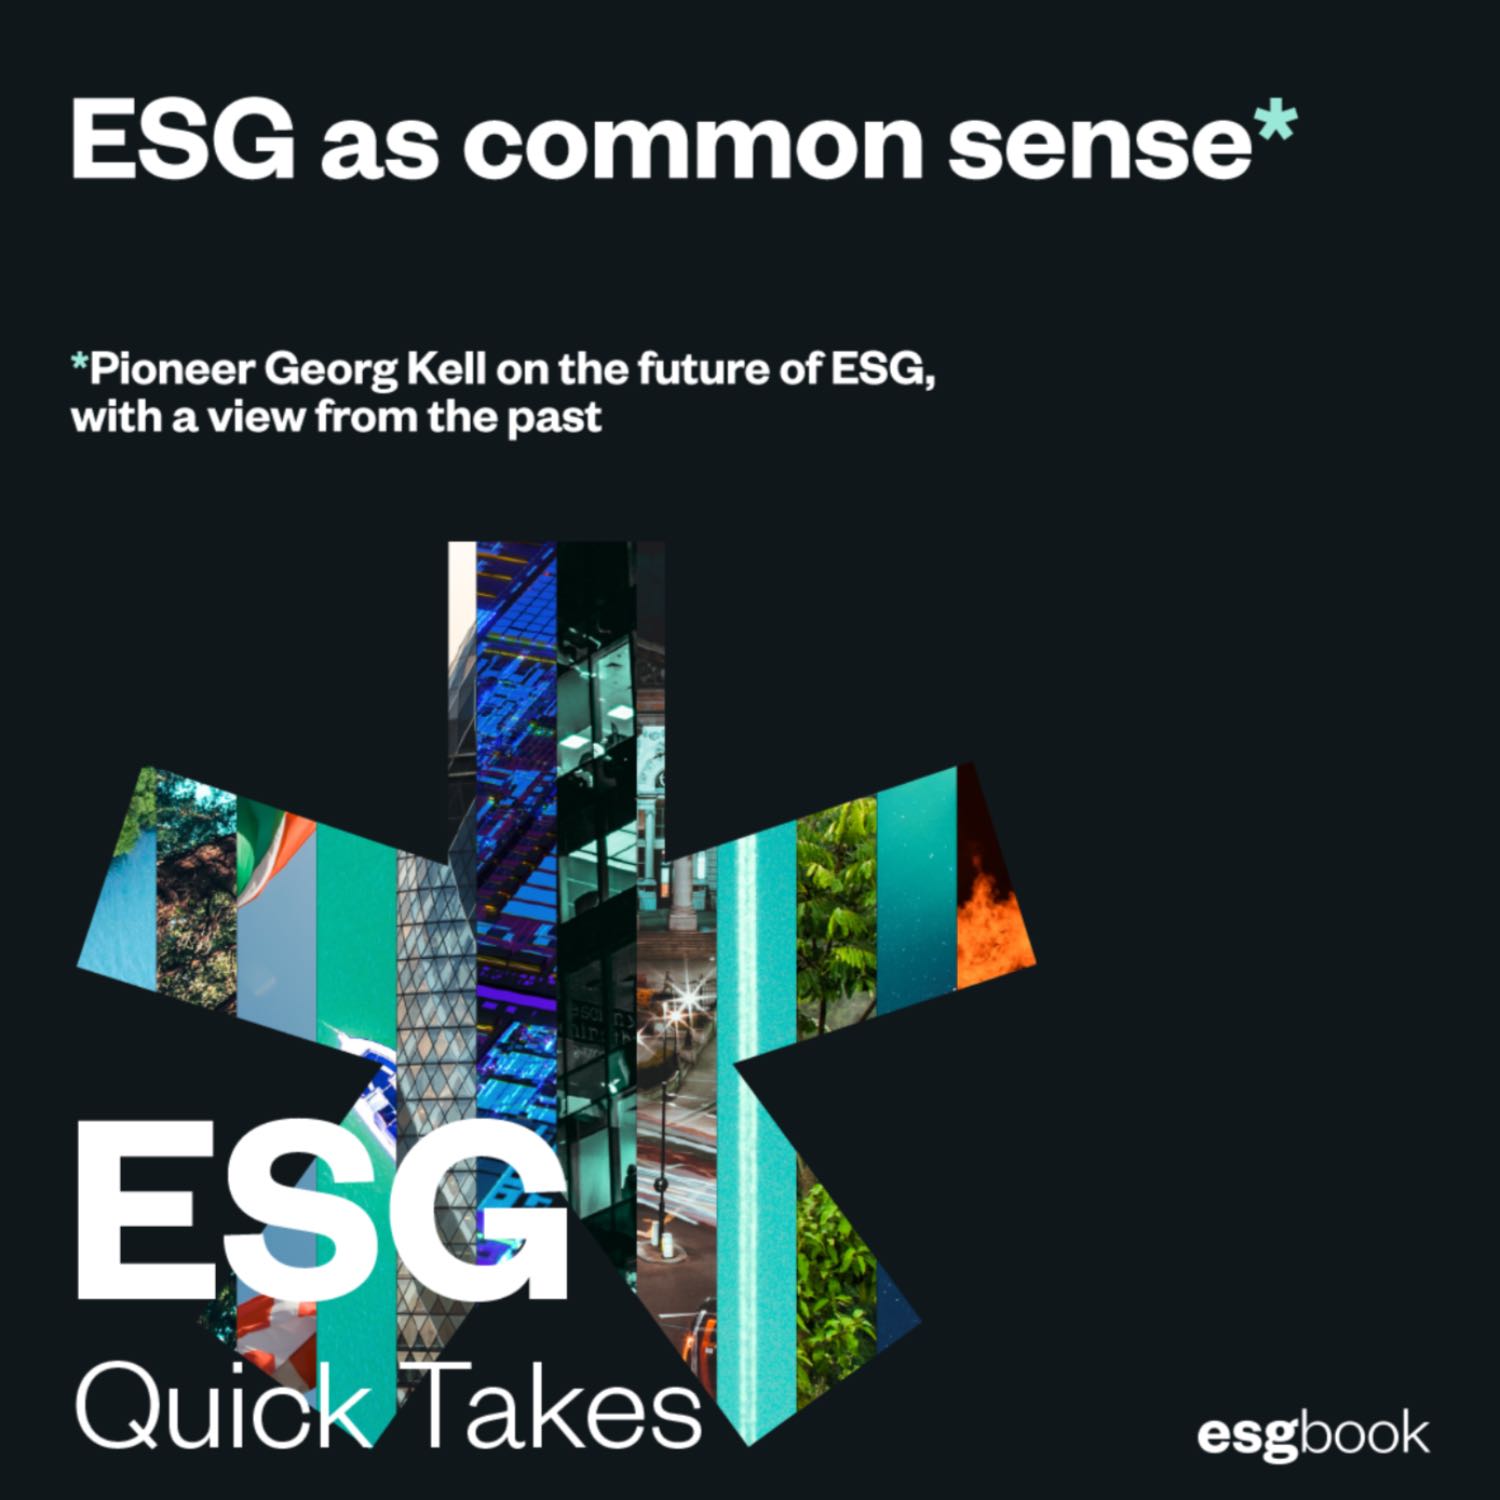 ESG as common sense: Georg Kell on the future of ESG